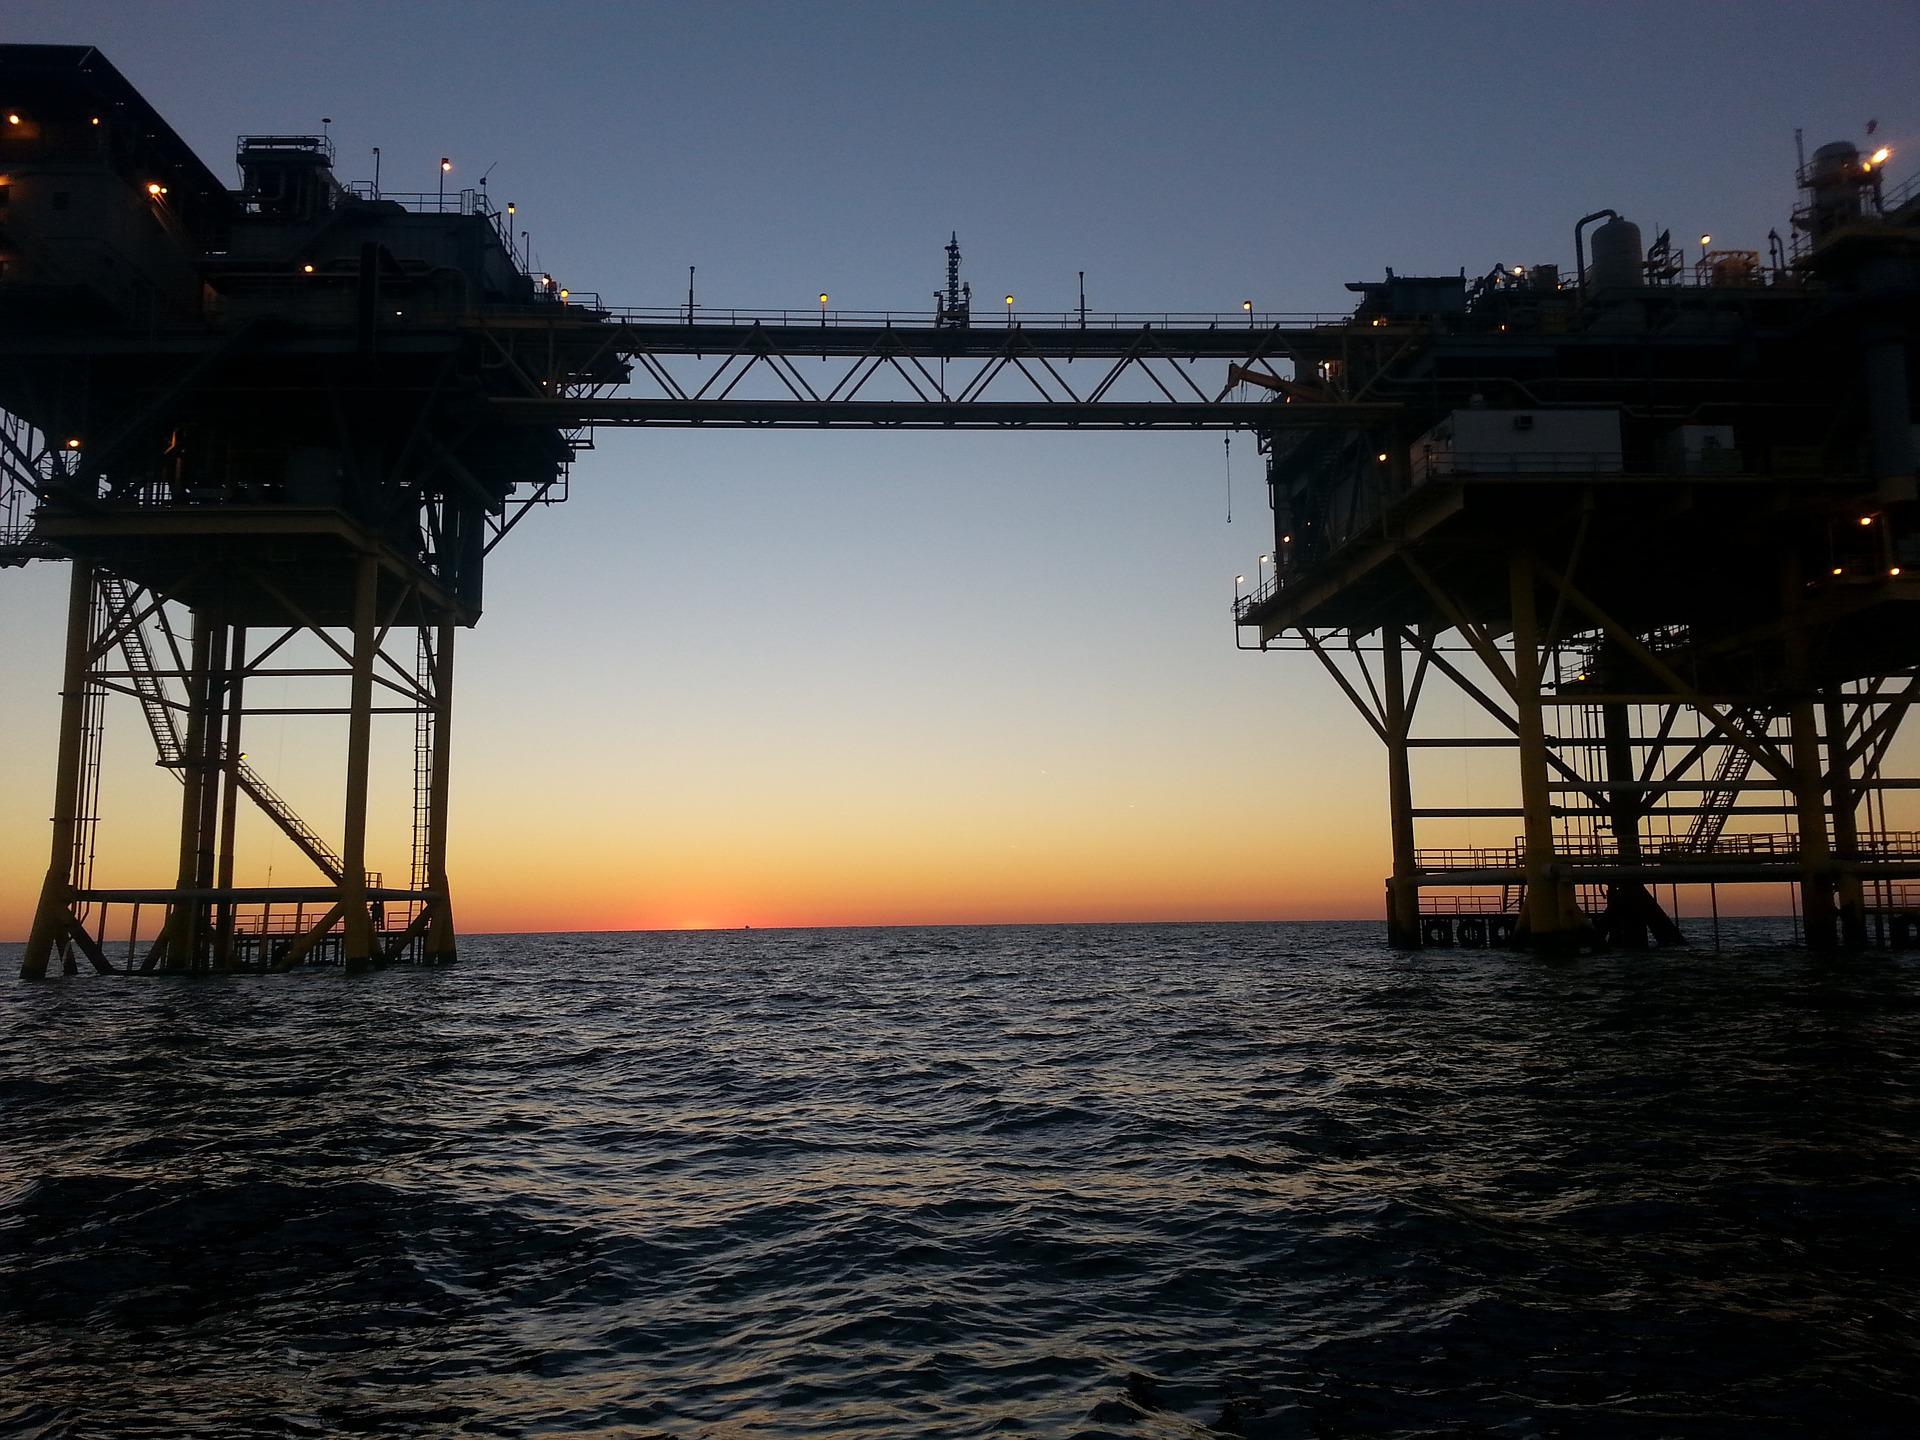 Conheça a Vroon, multinacional de óleo e gás que está com vagas de emprego offshore de nível técnico e superior para o exterior -Fonte: Pixabay